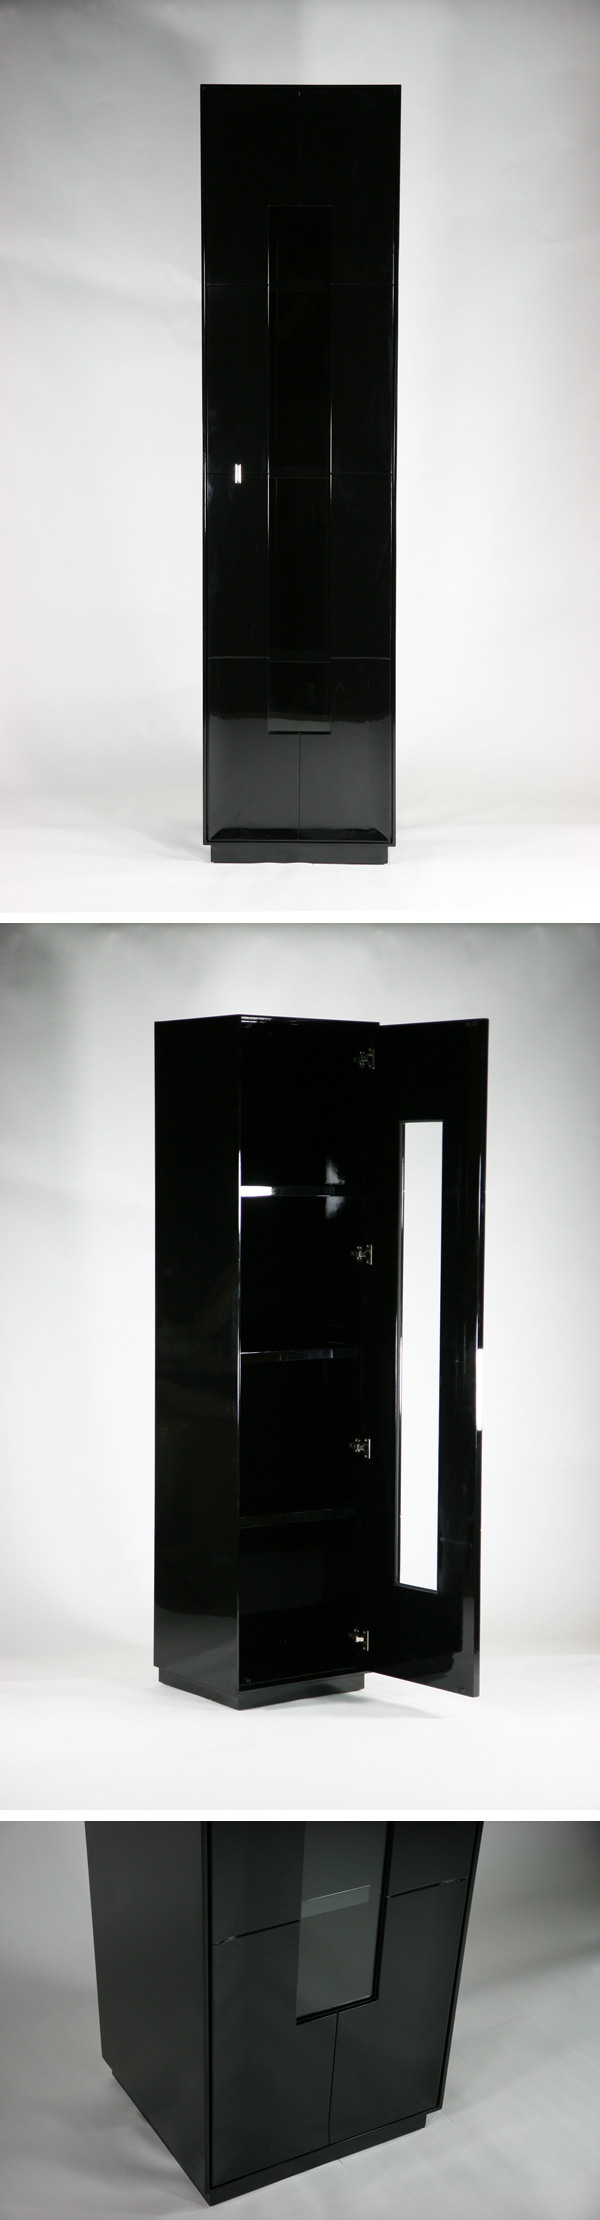 純正売送料無料 新品 大型 1door キャビネット コレクションボード 飾り棚 完成品 ブラック 飾り棚